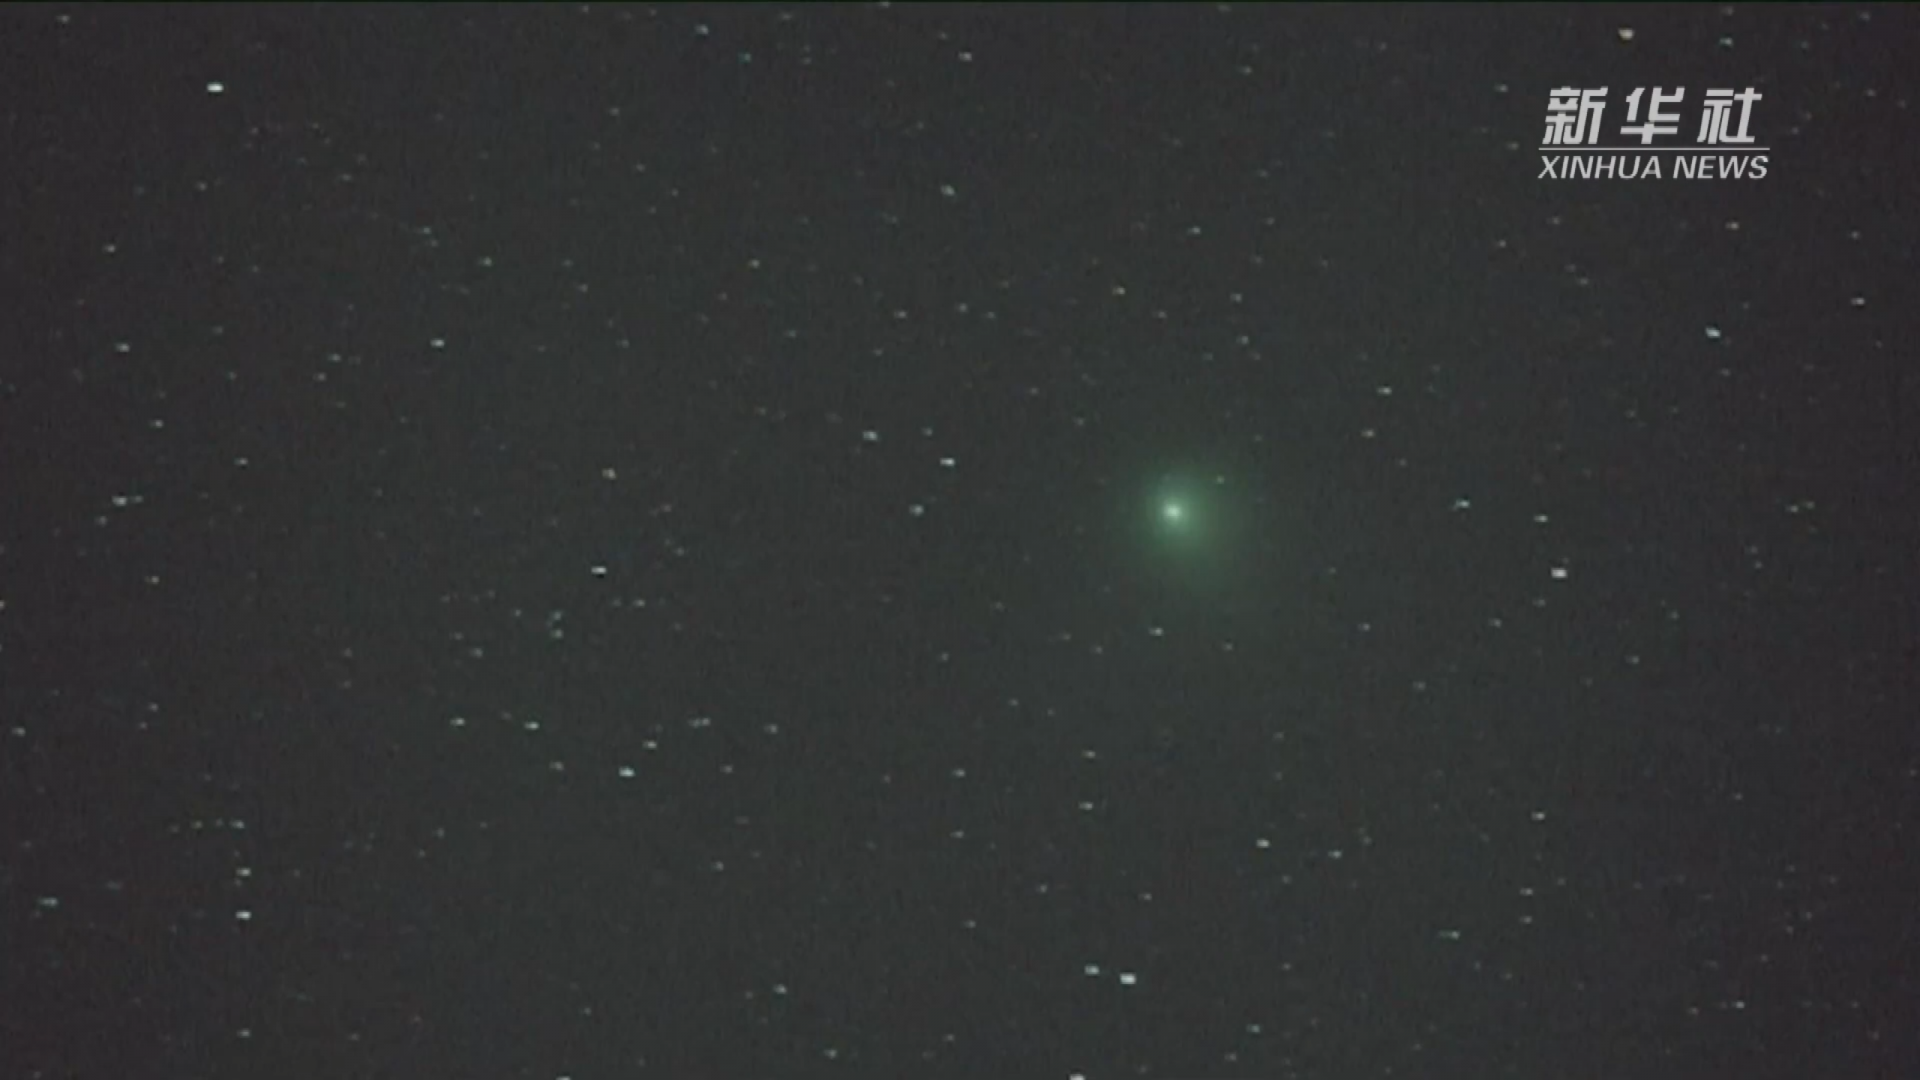 绿色彗星造访地球